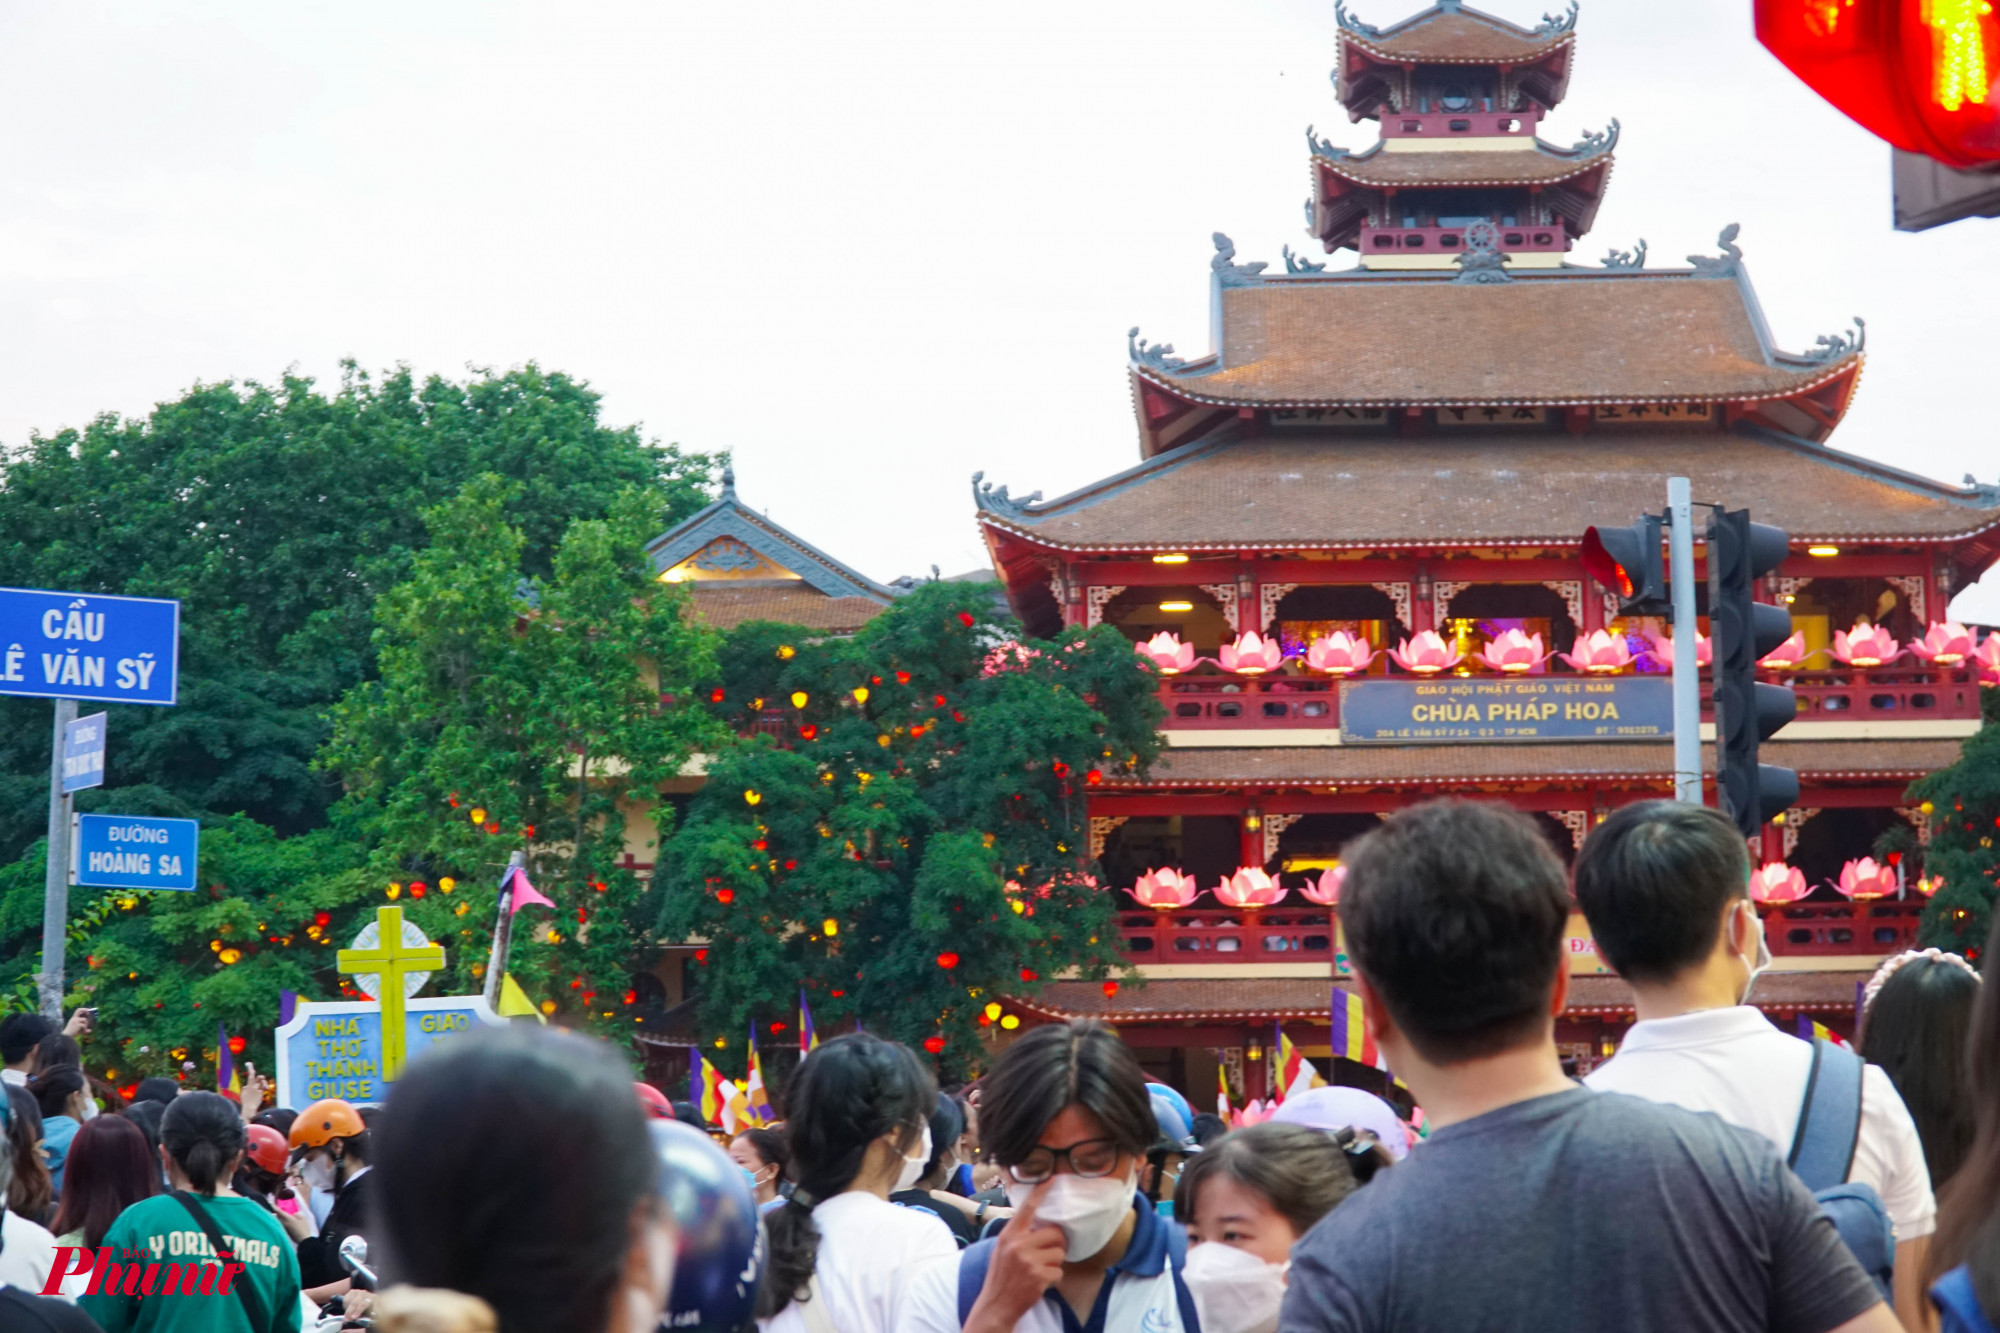 Đến gần 18g, chùa Pháp Hoa lung linh đón khách thập phương về viếng chùa